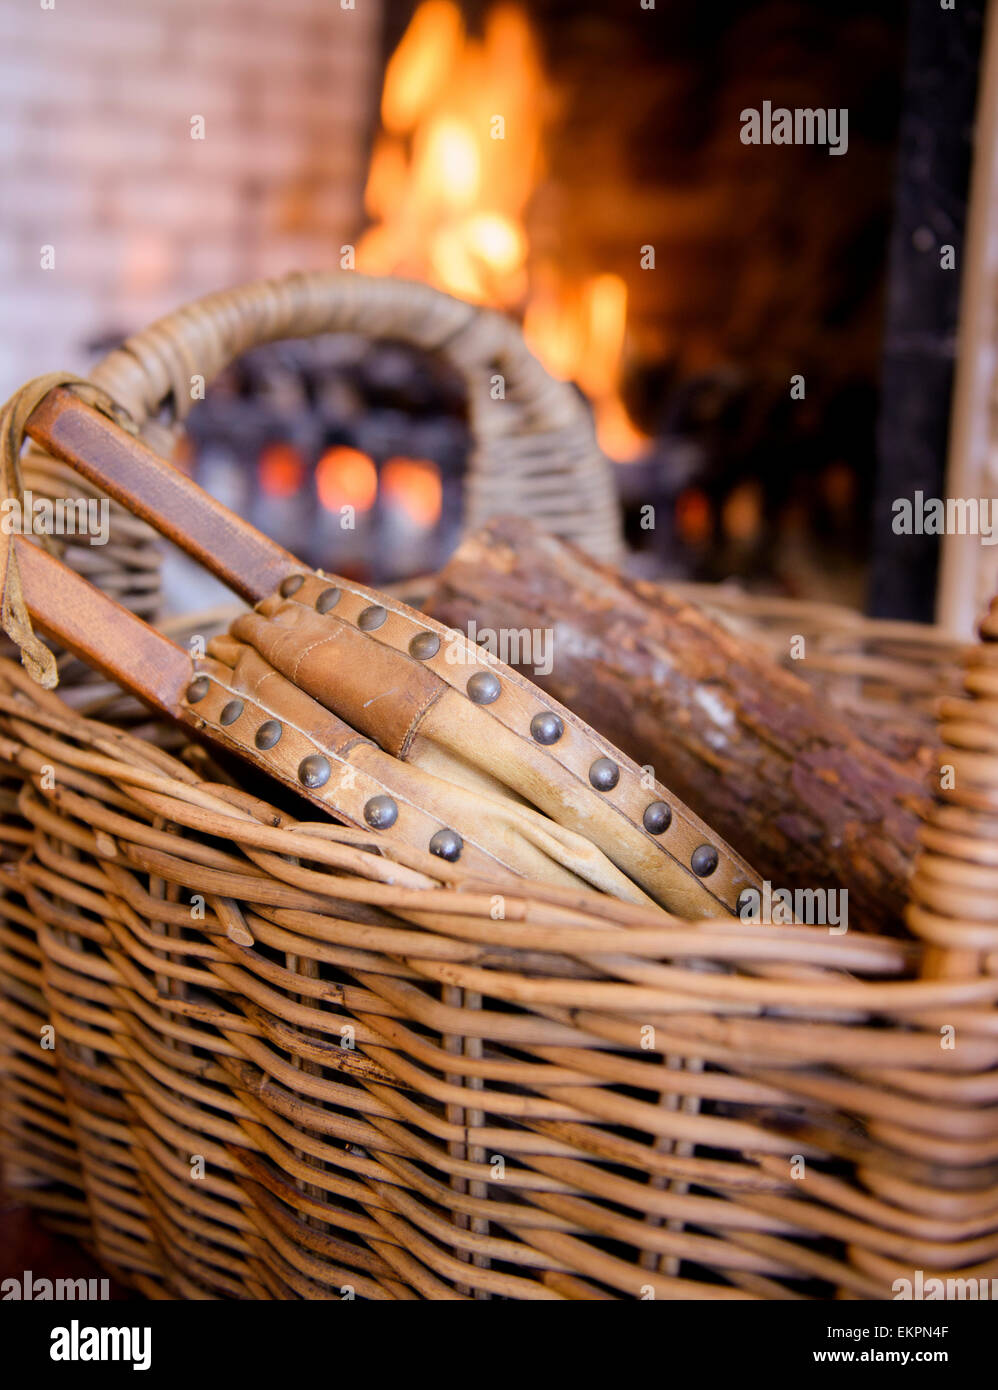 Faltenbalg in einem Weidenkorb vor dem offenen Feuer. Stockfoto